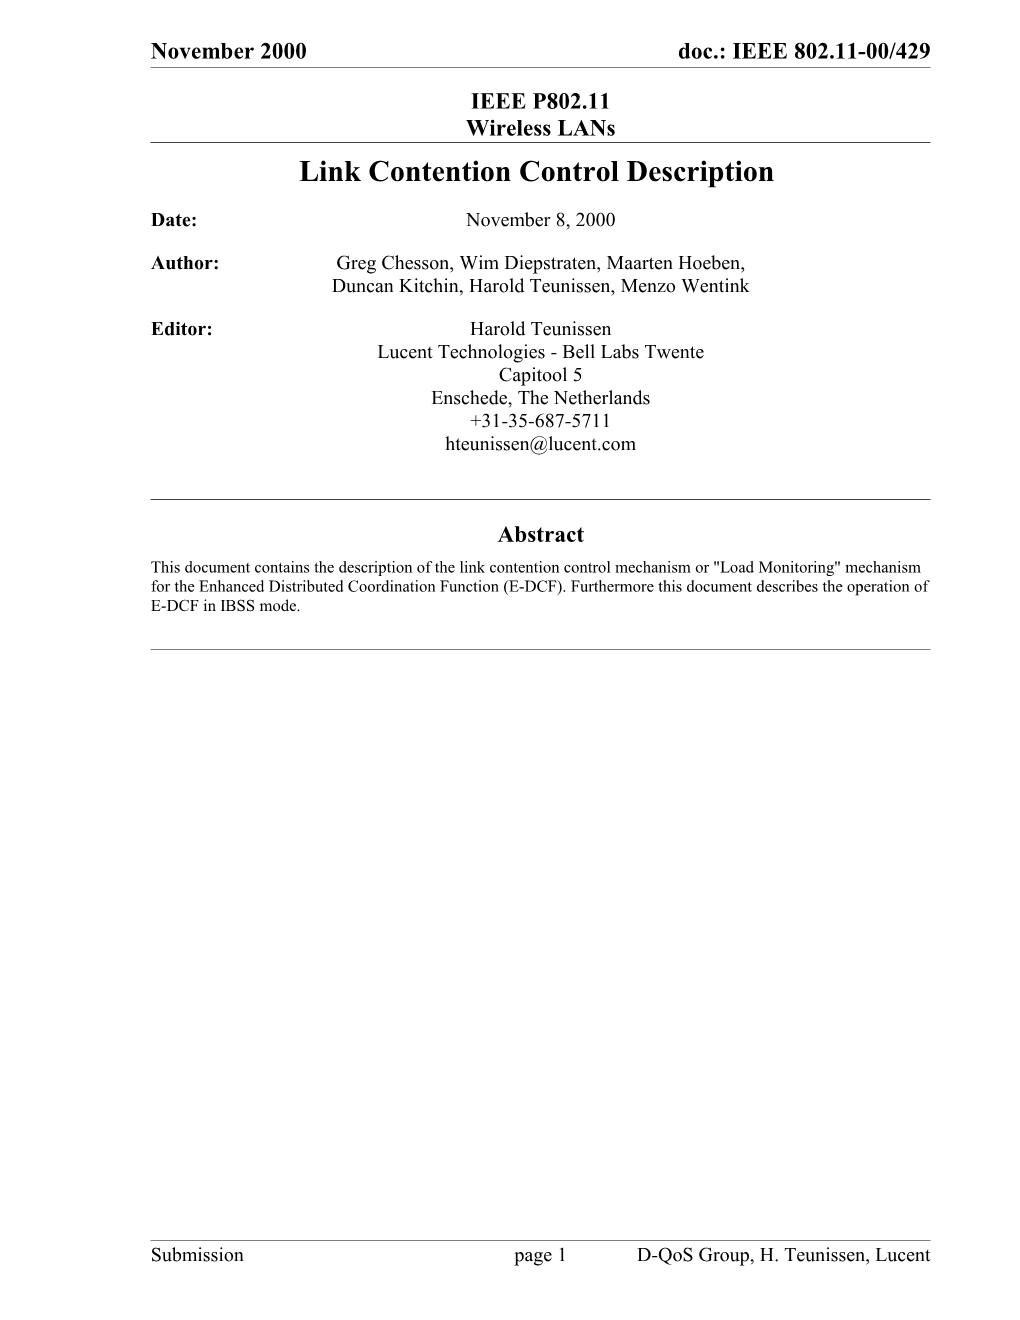 Link Contention Control Description